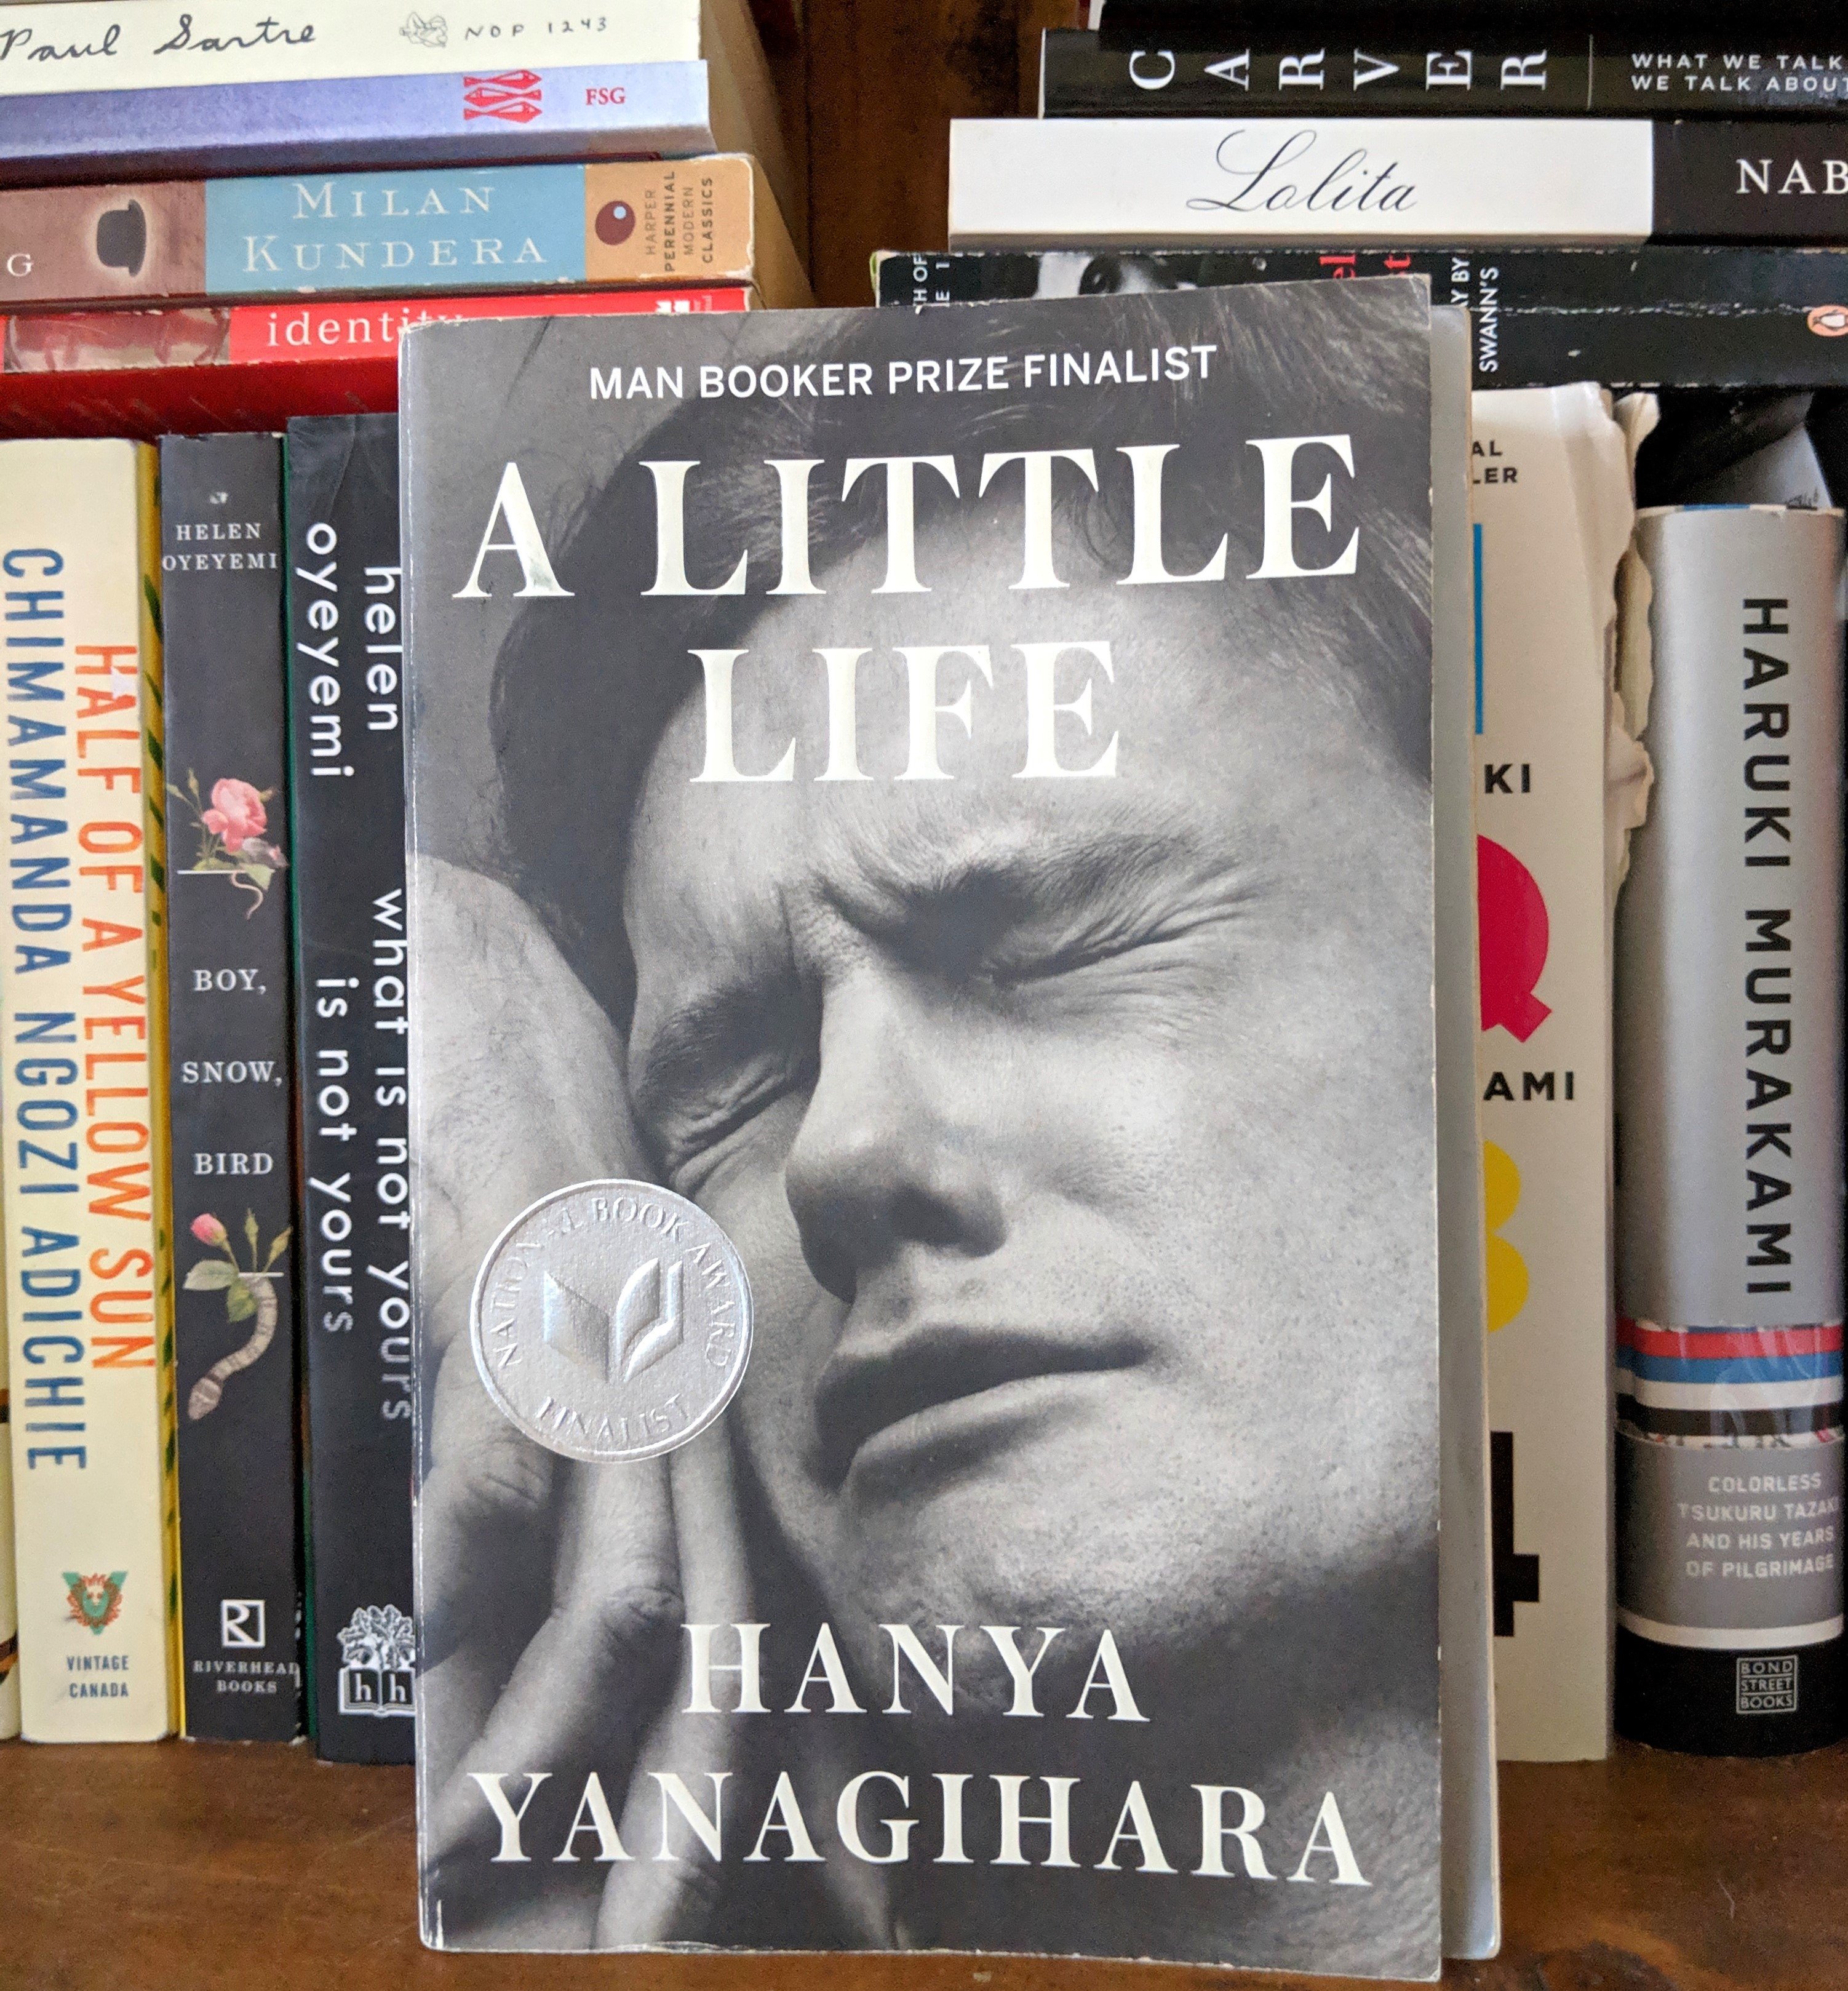 A little life книга. A little Life Cover. The little Life hanya Yanagihara обложка. Жизнь как книга.